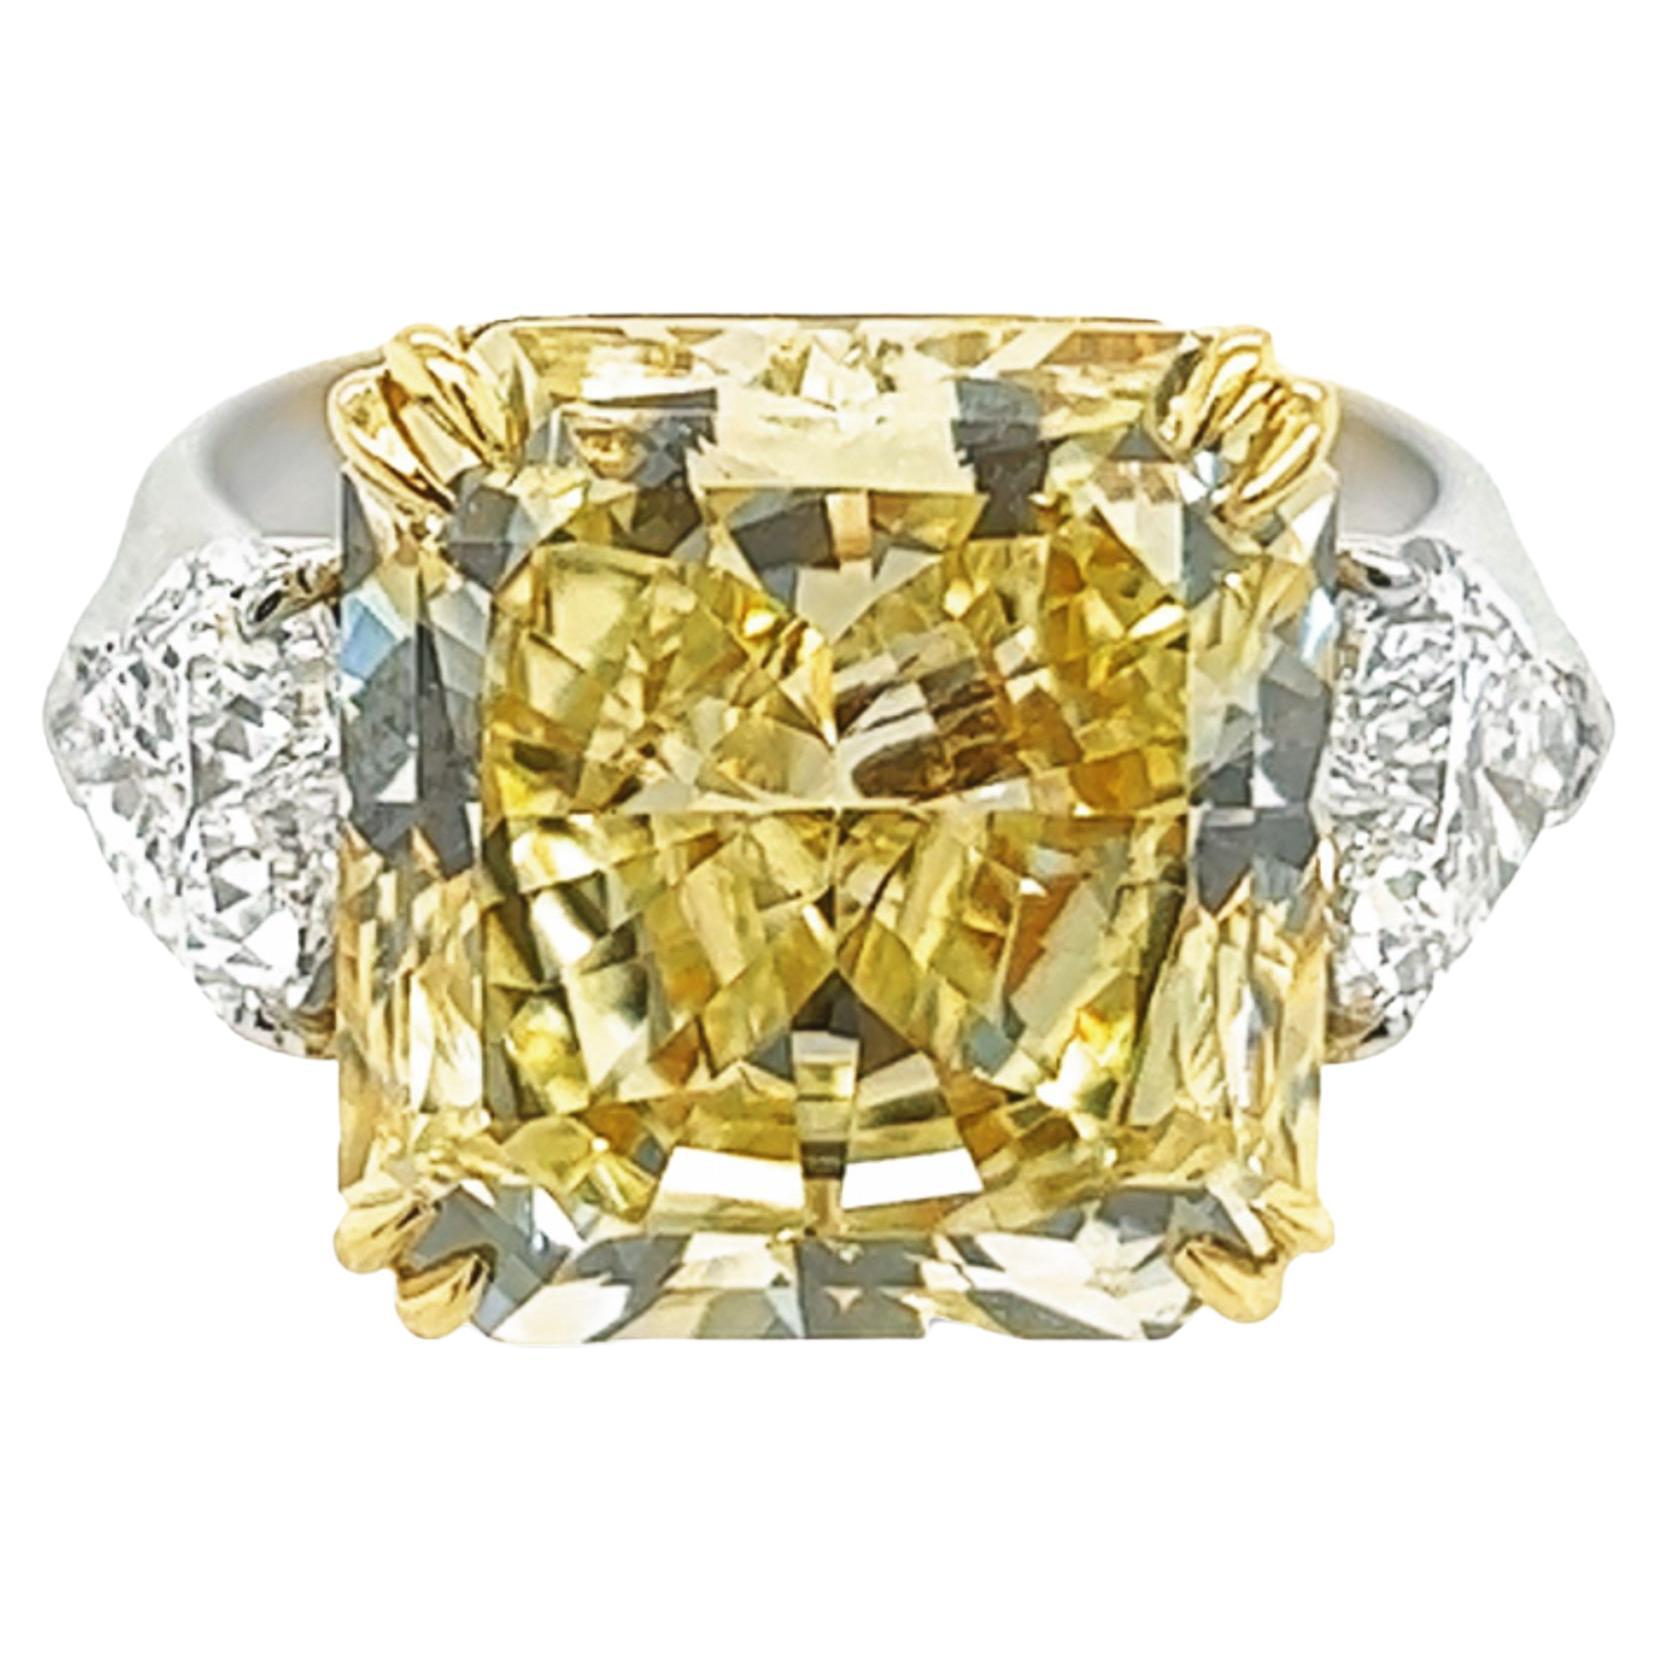 David Rosenberg Bague de fiançailles jaune radiant avec diamants VVS1 certifiés GIA, 10,23